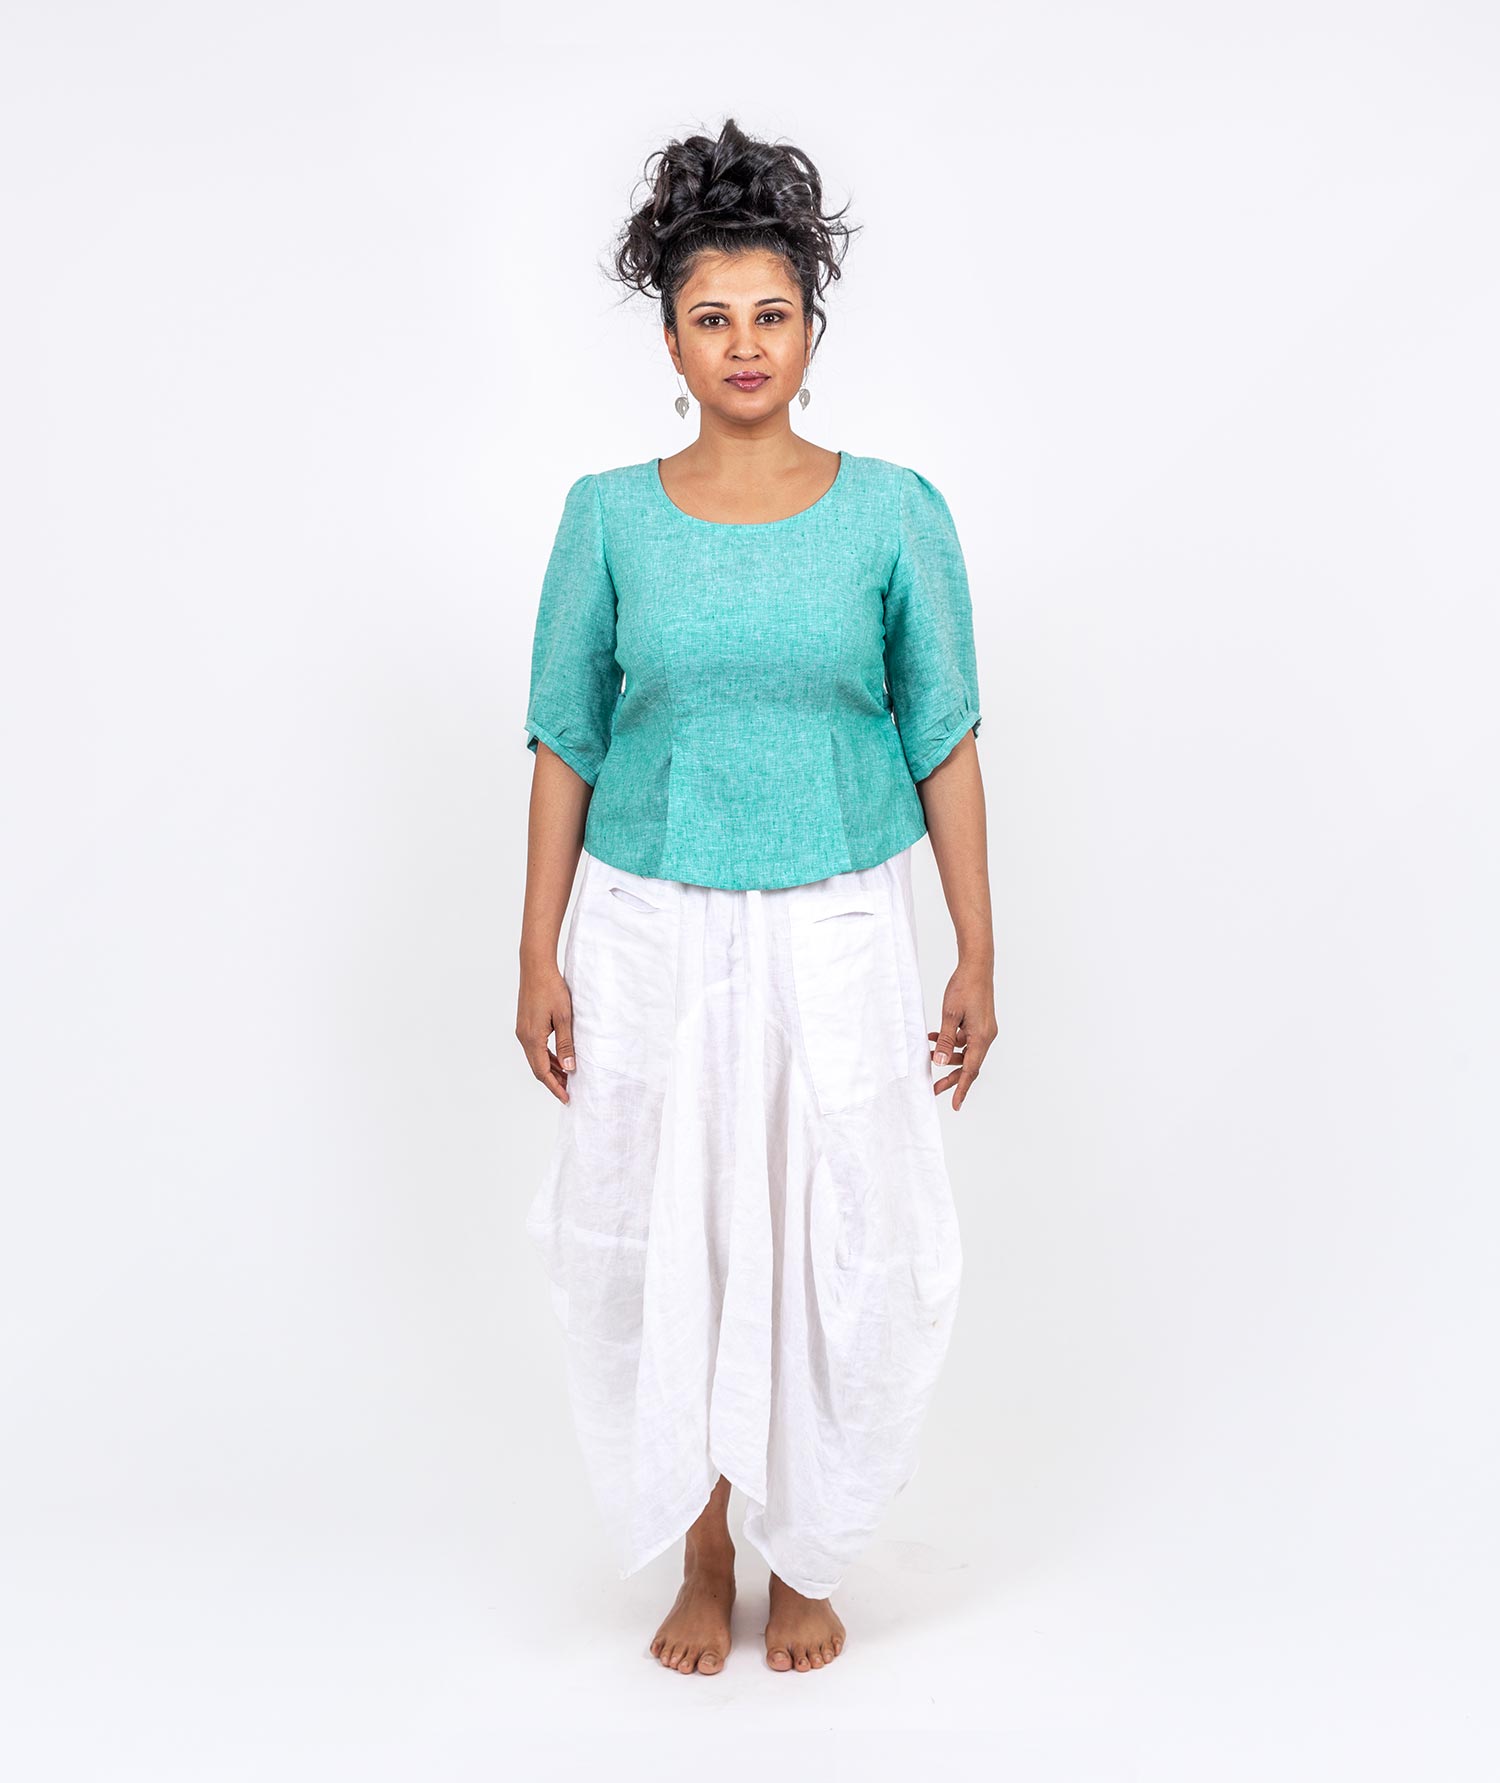 holi-boli-ethical-fashion-india-clothes-2020–72